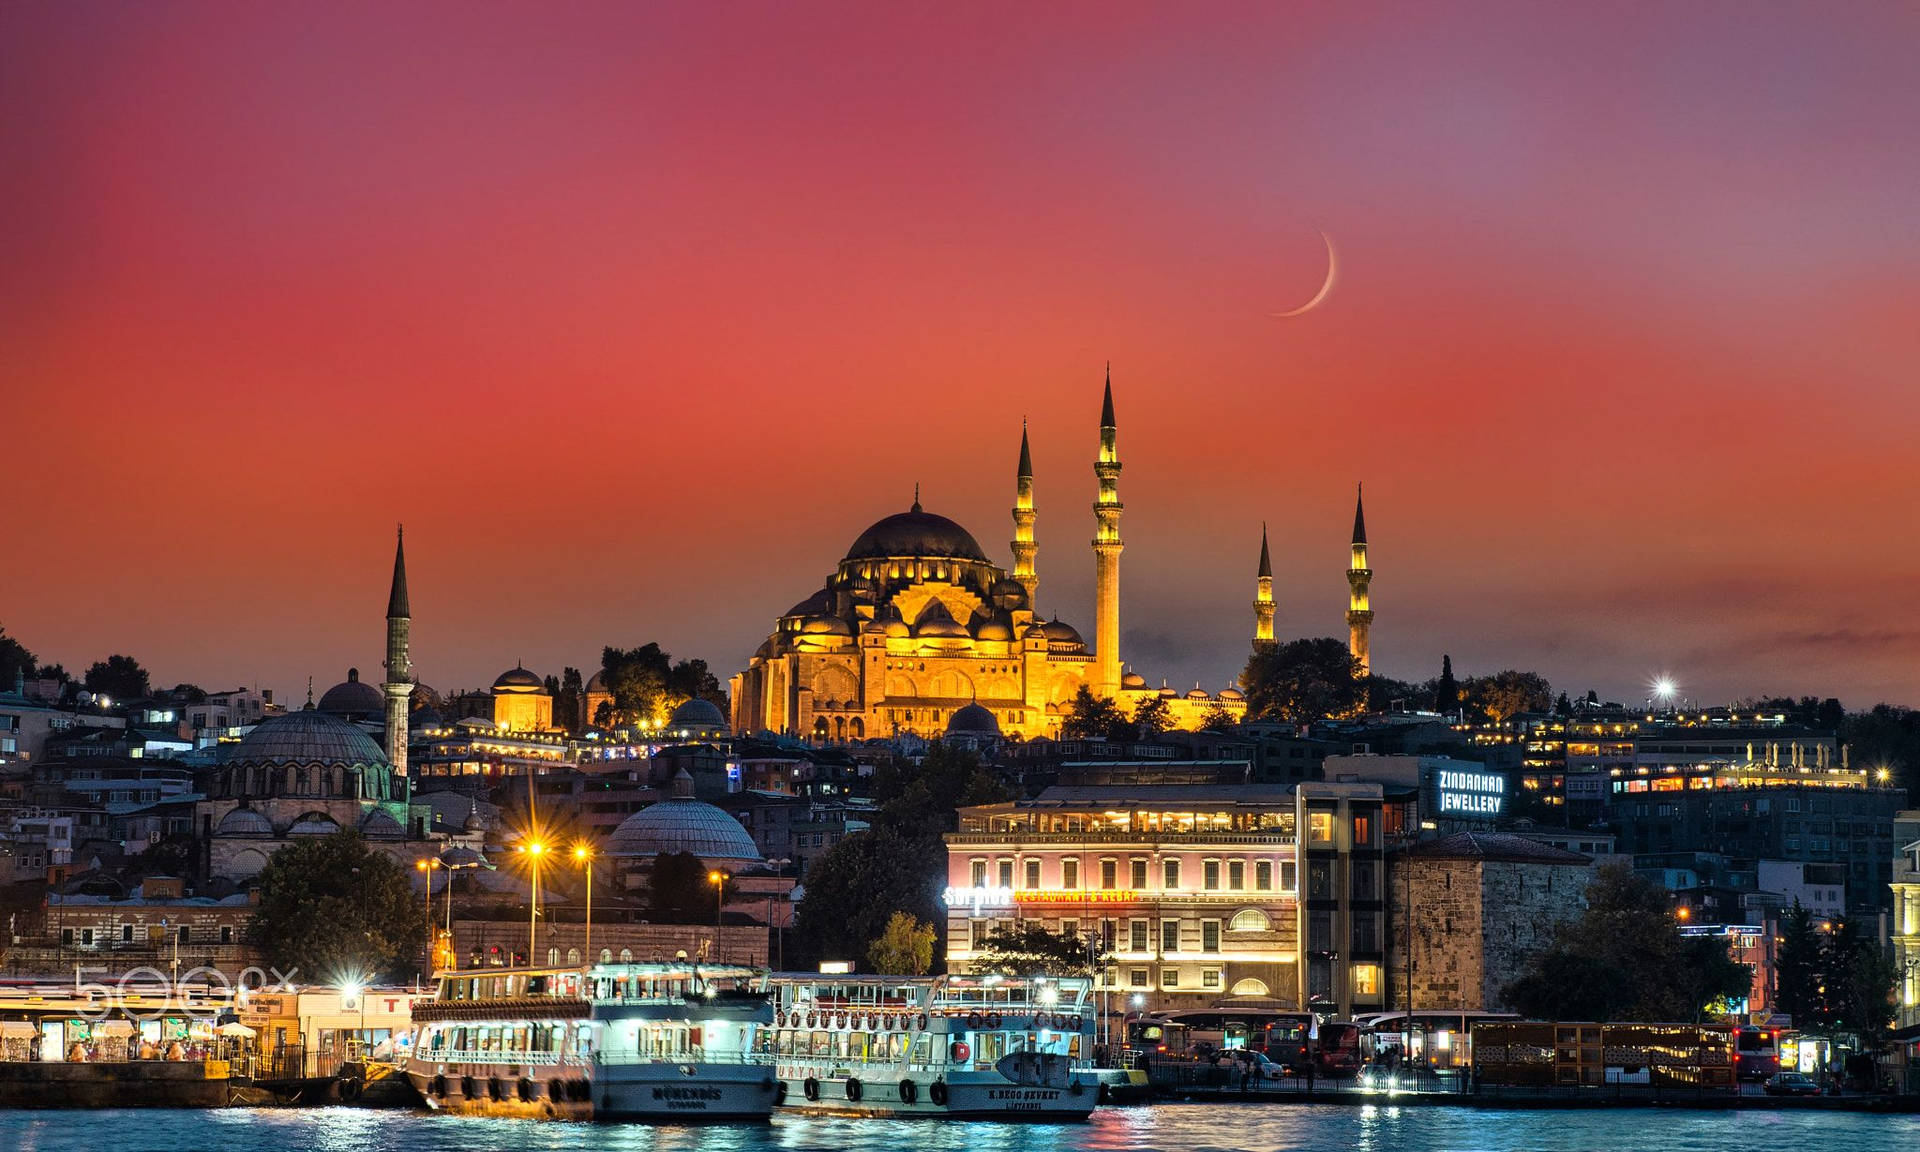 Istanbul's Suleymaniye Mosque